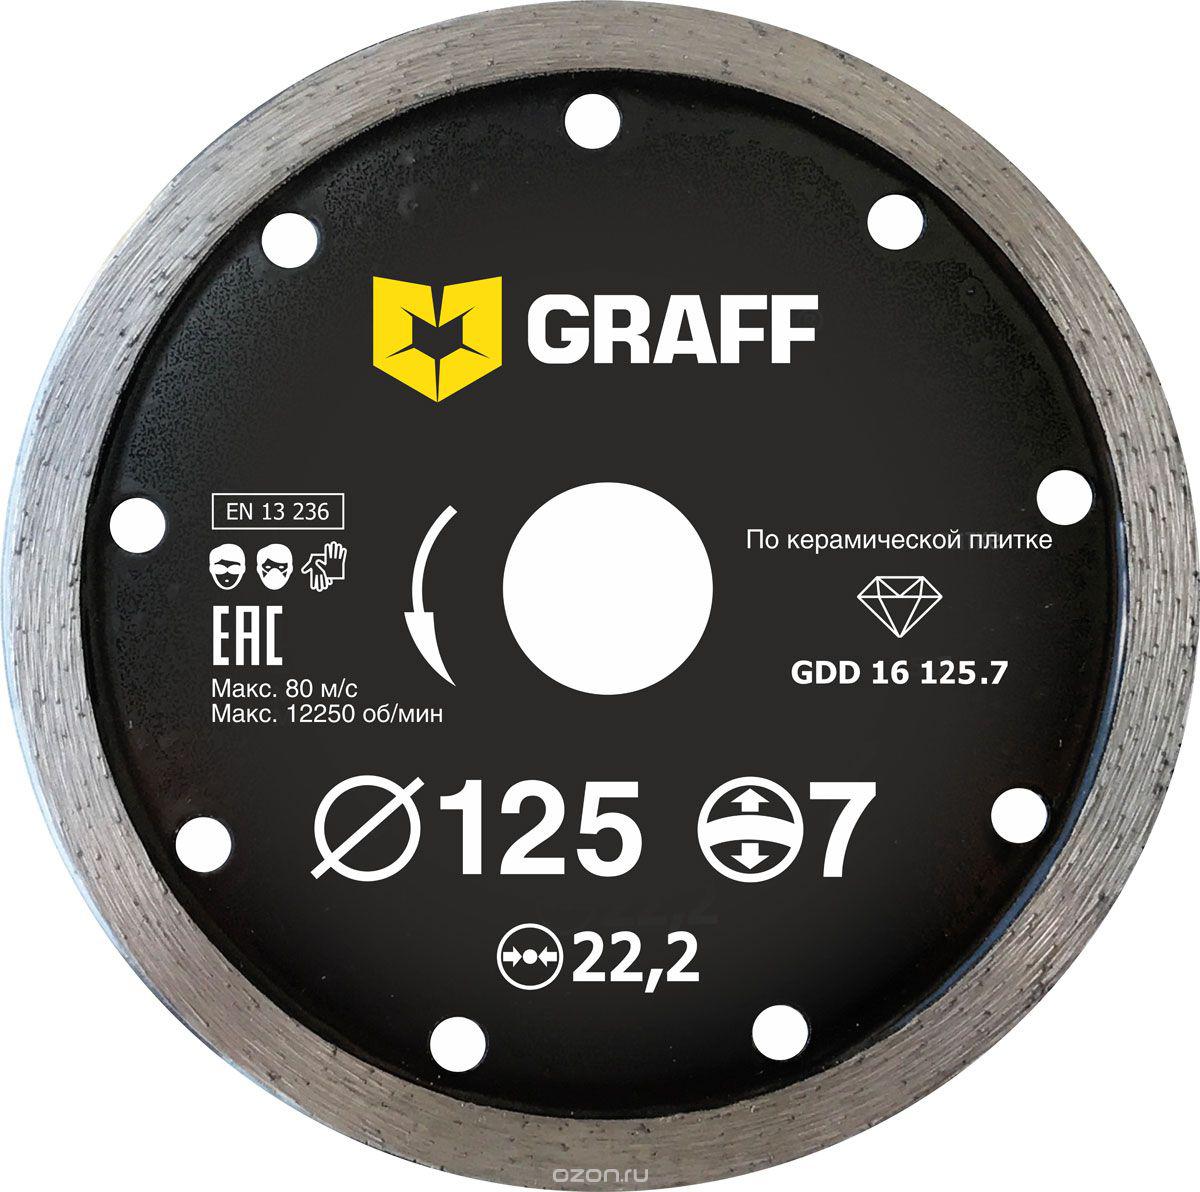 Диск отрезной алмазный GRAFF (GDD 16 125.7) Ф125х22мм по керамике диск отрезной алмазный универсальный dewalt dt3732 qz